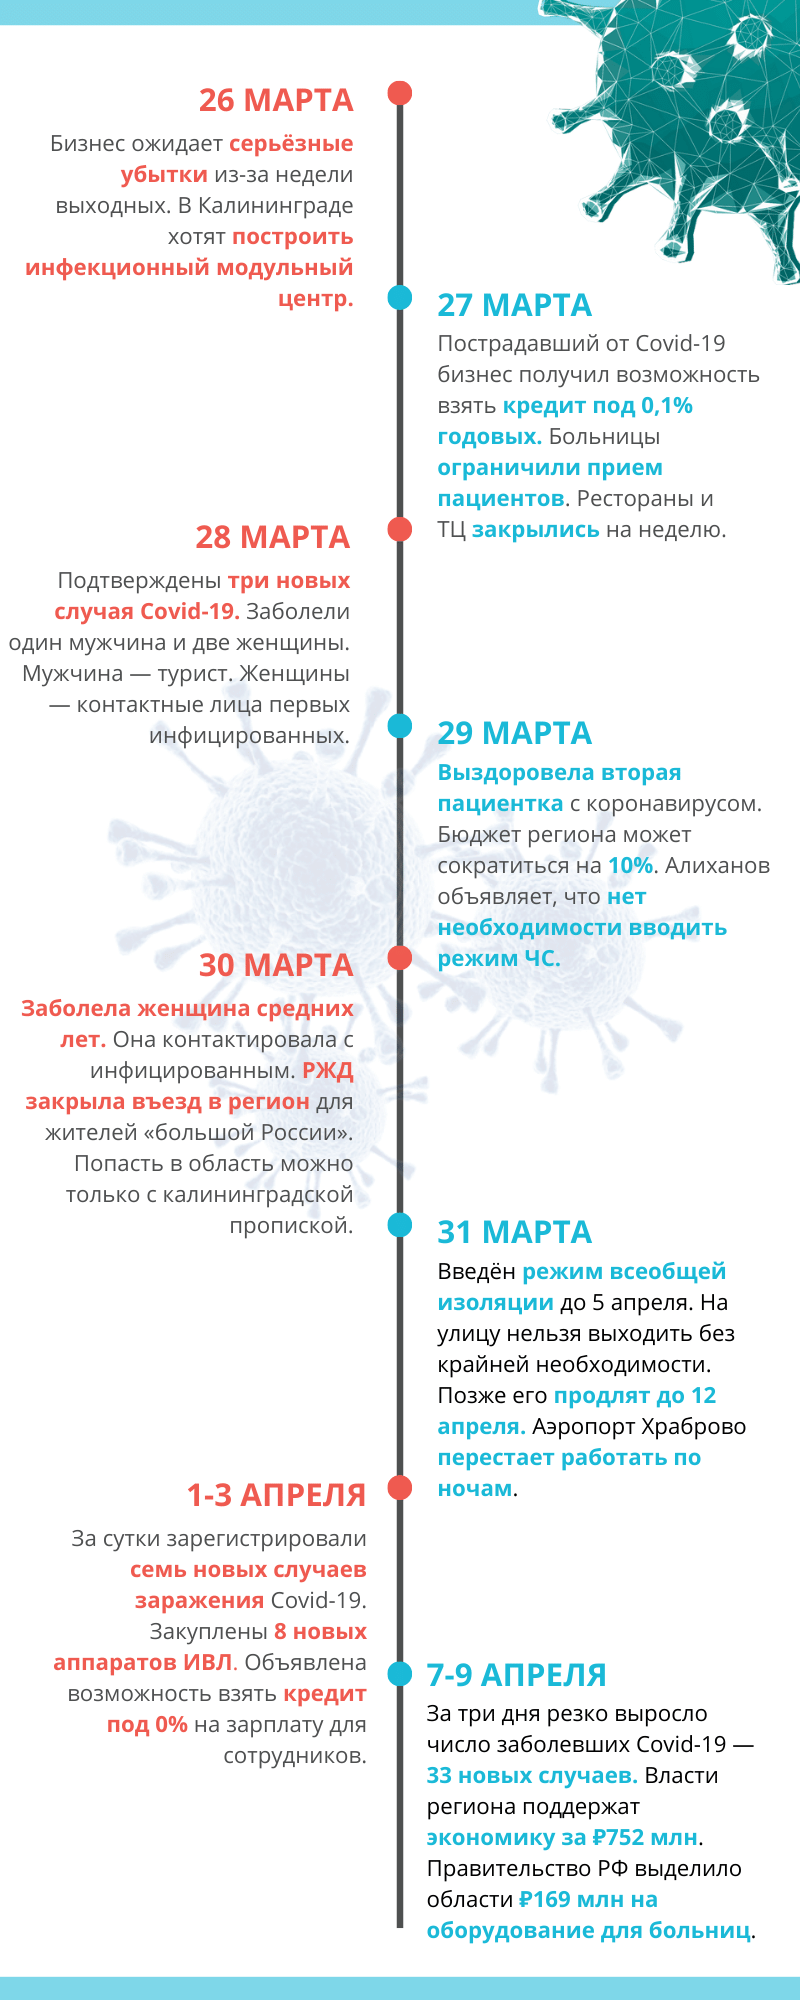 Covid-19 в Калининграде: полная хроника событий за месяц. Инфографика